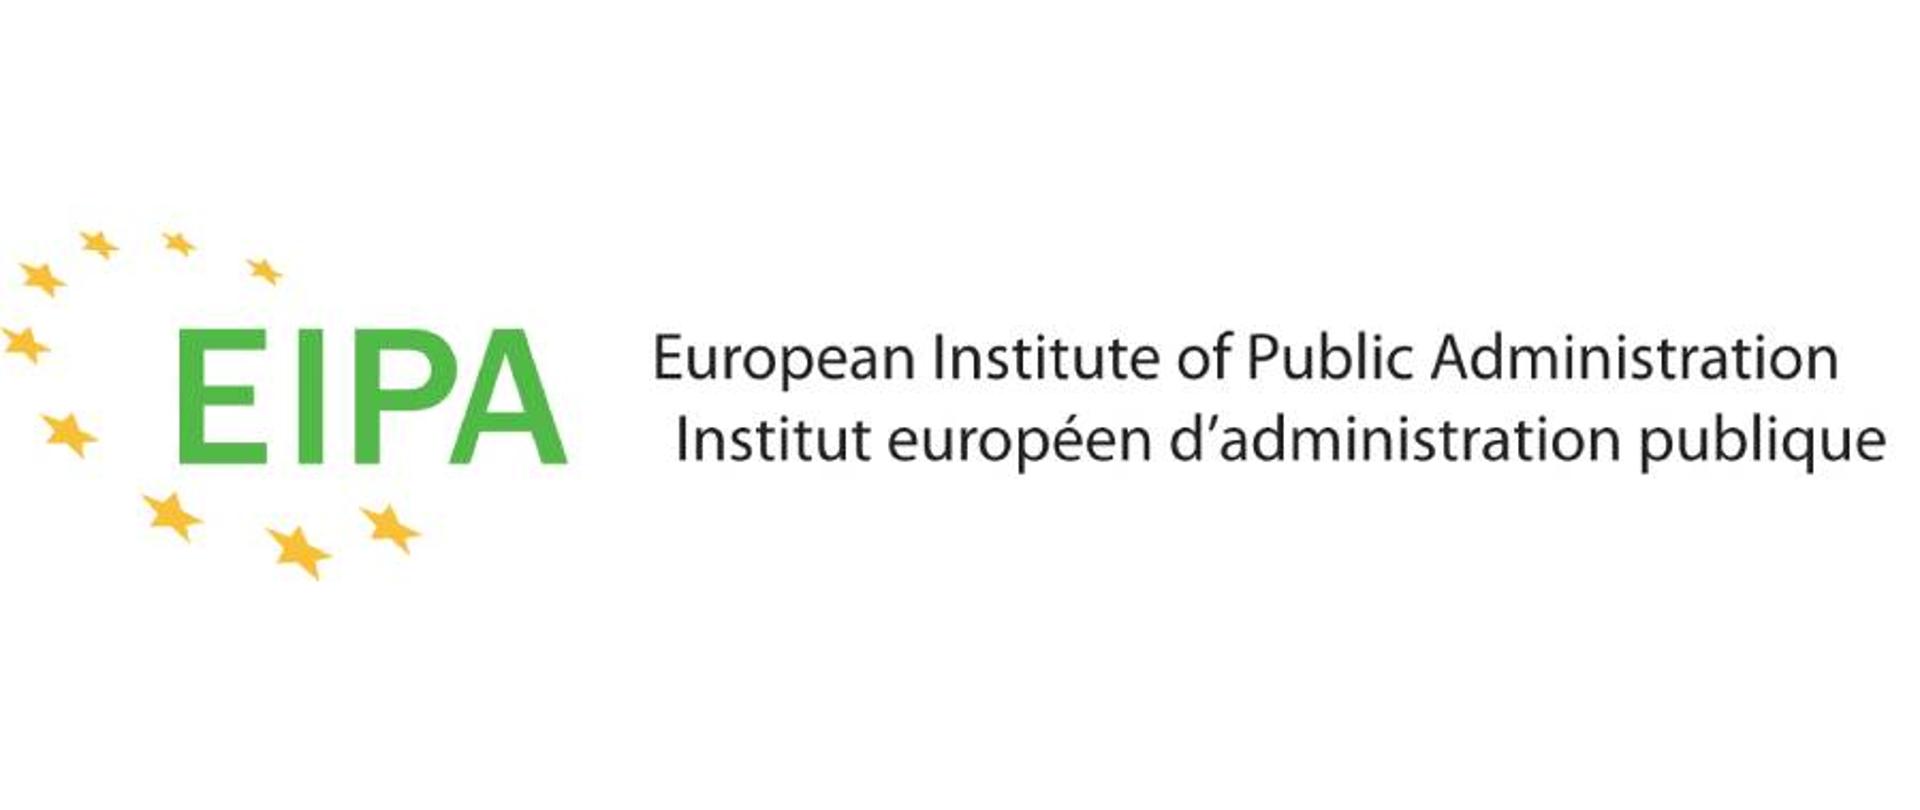 logo EIPA (Europejski Instytut Administracji Publicznej w Maastricht (ang. European Institute of Public Administration). Po lewej zielony napis wpisany w okrąg ze złotych gwiazdek. Po prawej rozwinięcie skrótu EIPA w językach angielskim i francuskim.